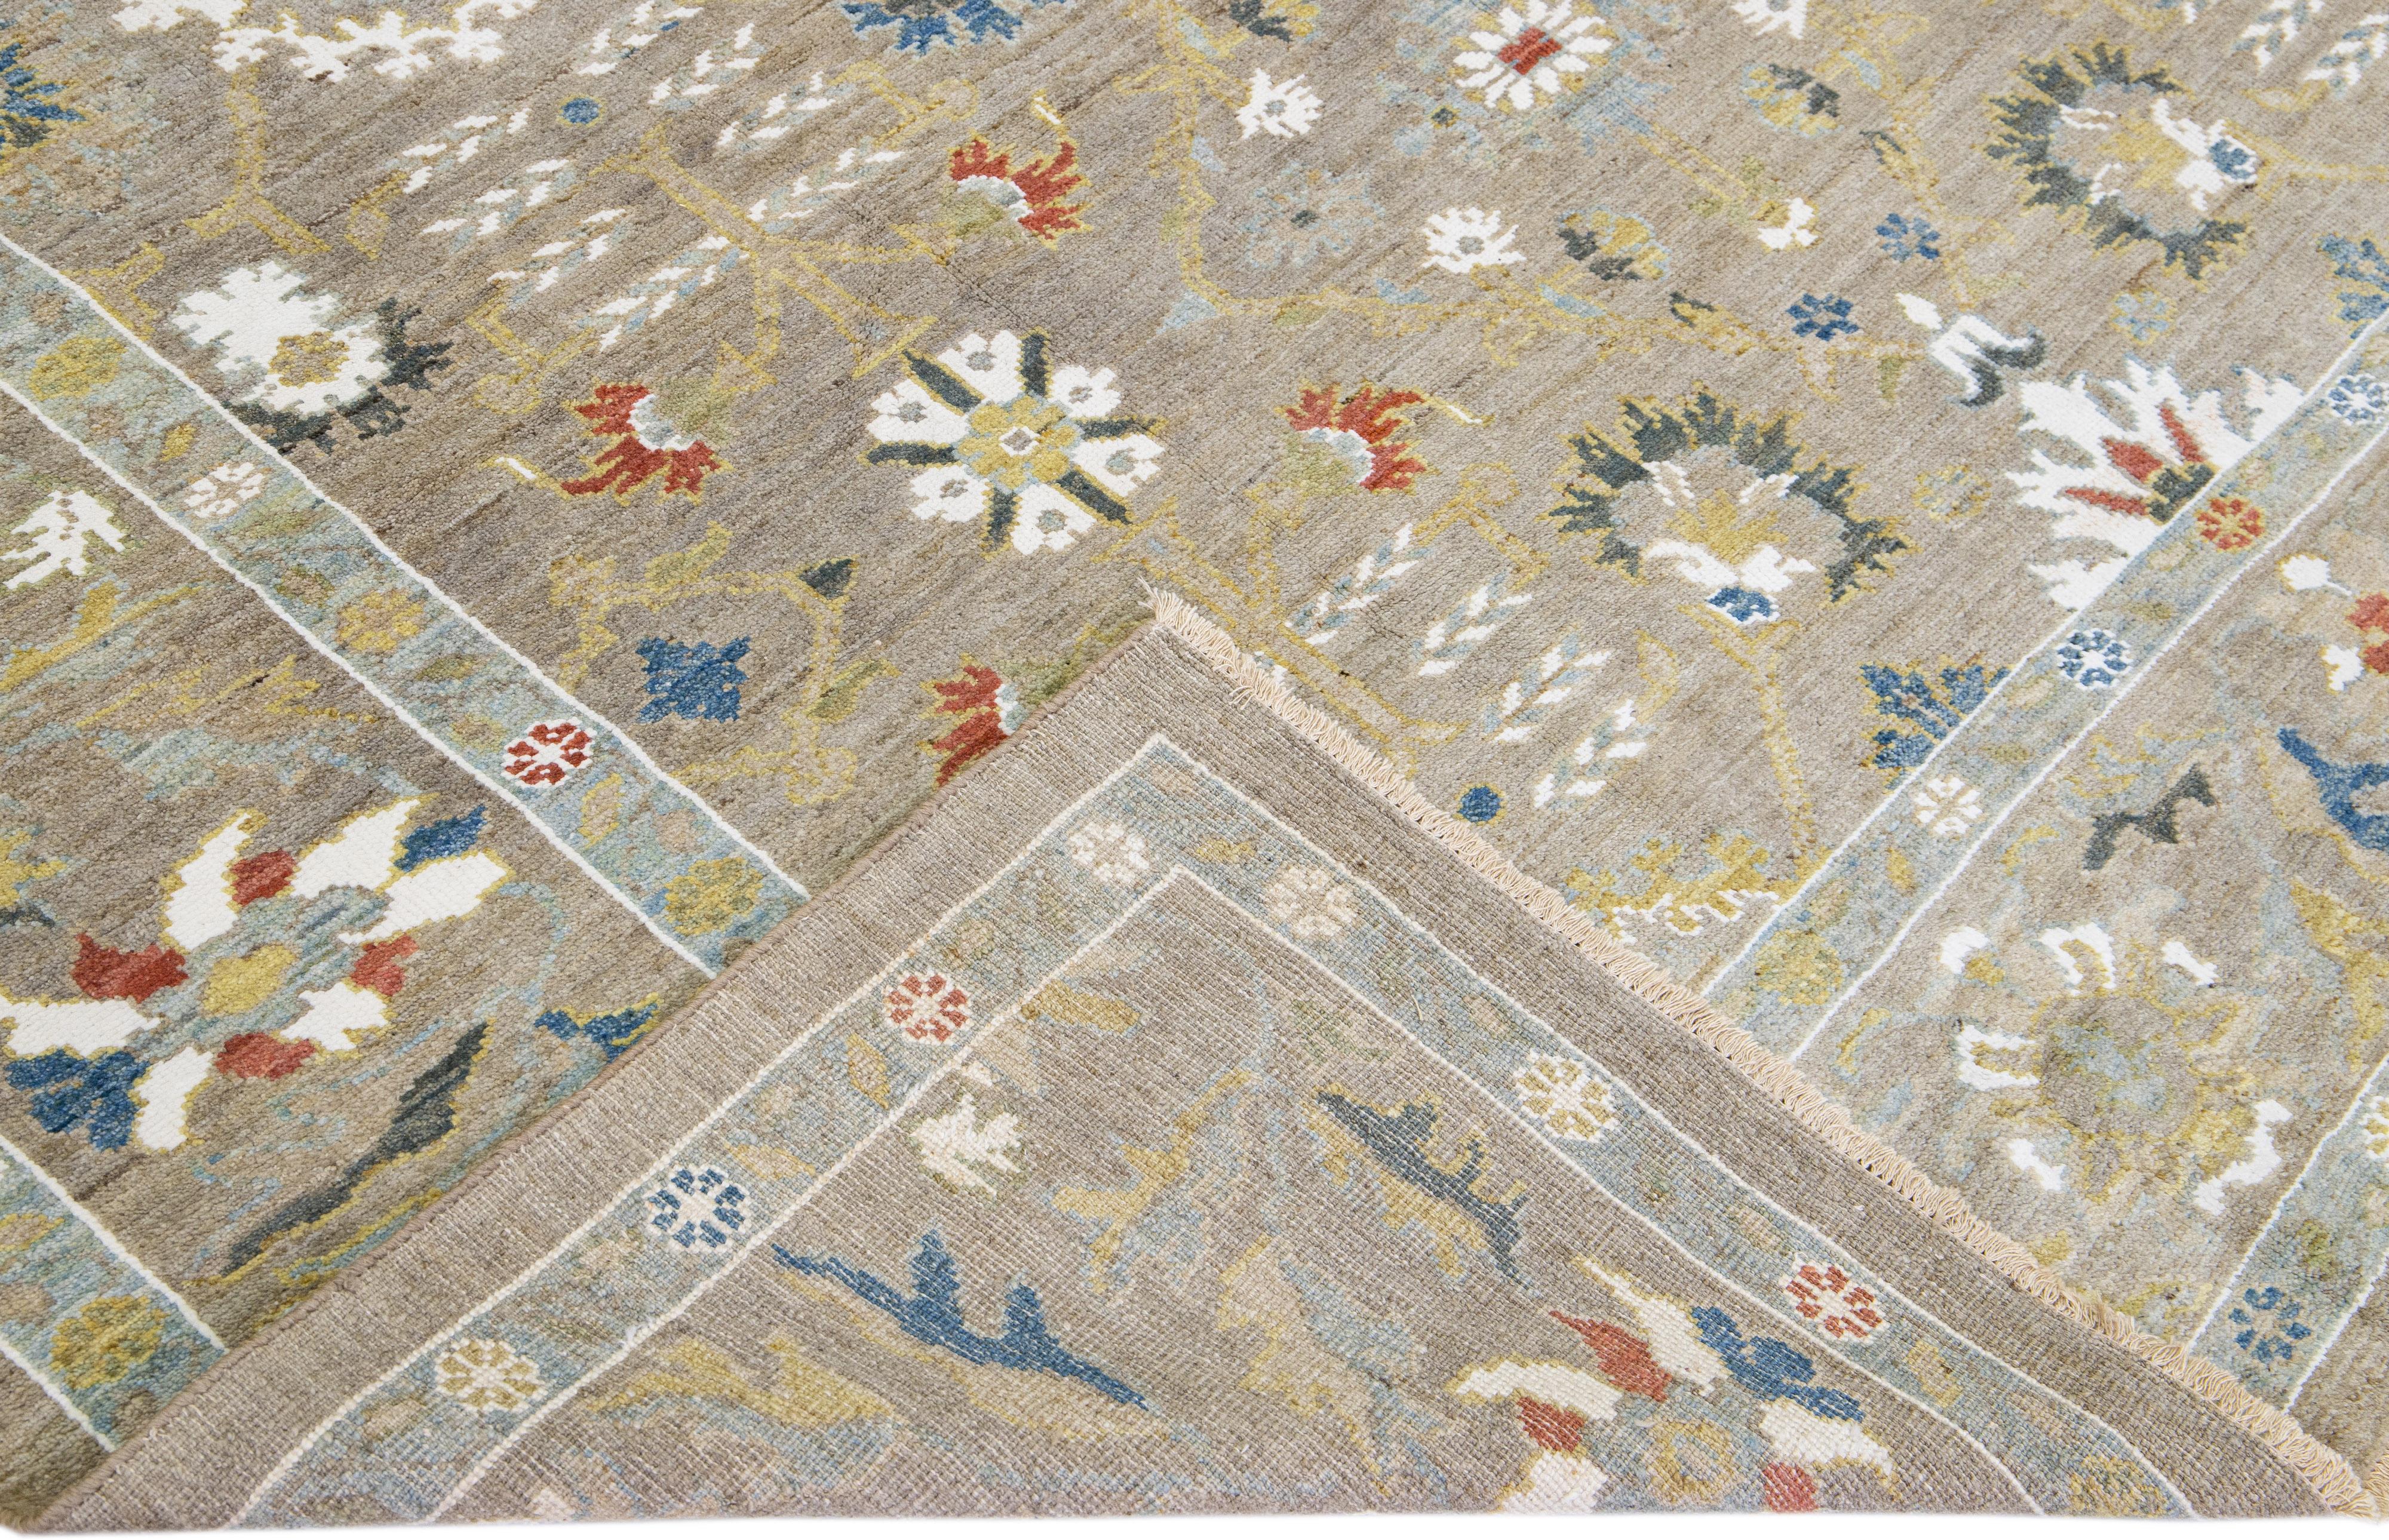 Magnifique tapis moderne Sultanabad en laine nouée à la main avec un champ brun clair. Ce tapis Sultanabad présente des accents multicolores dans un magnifique motif floral classique.

Ce tapis mesure : 8'8